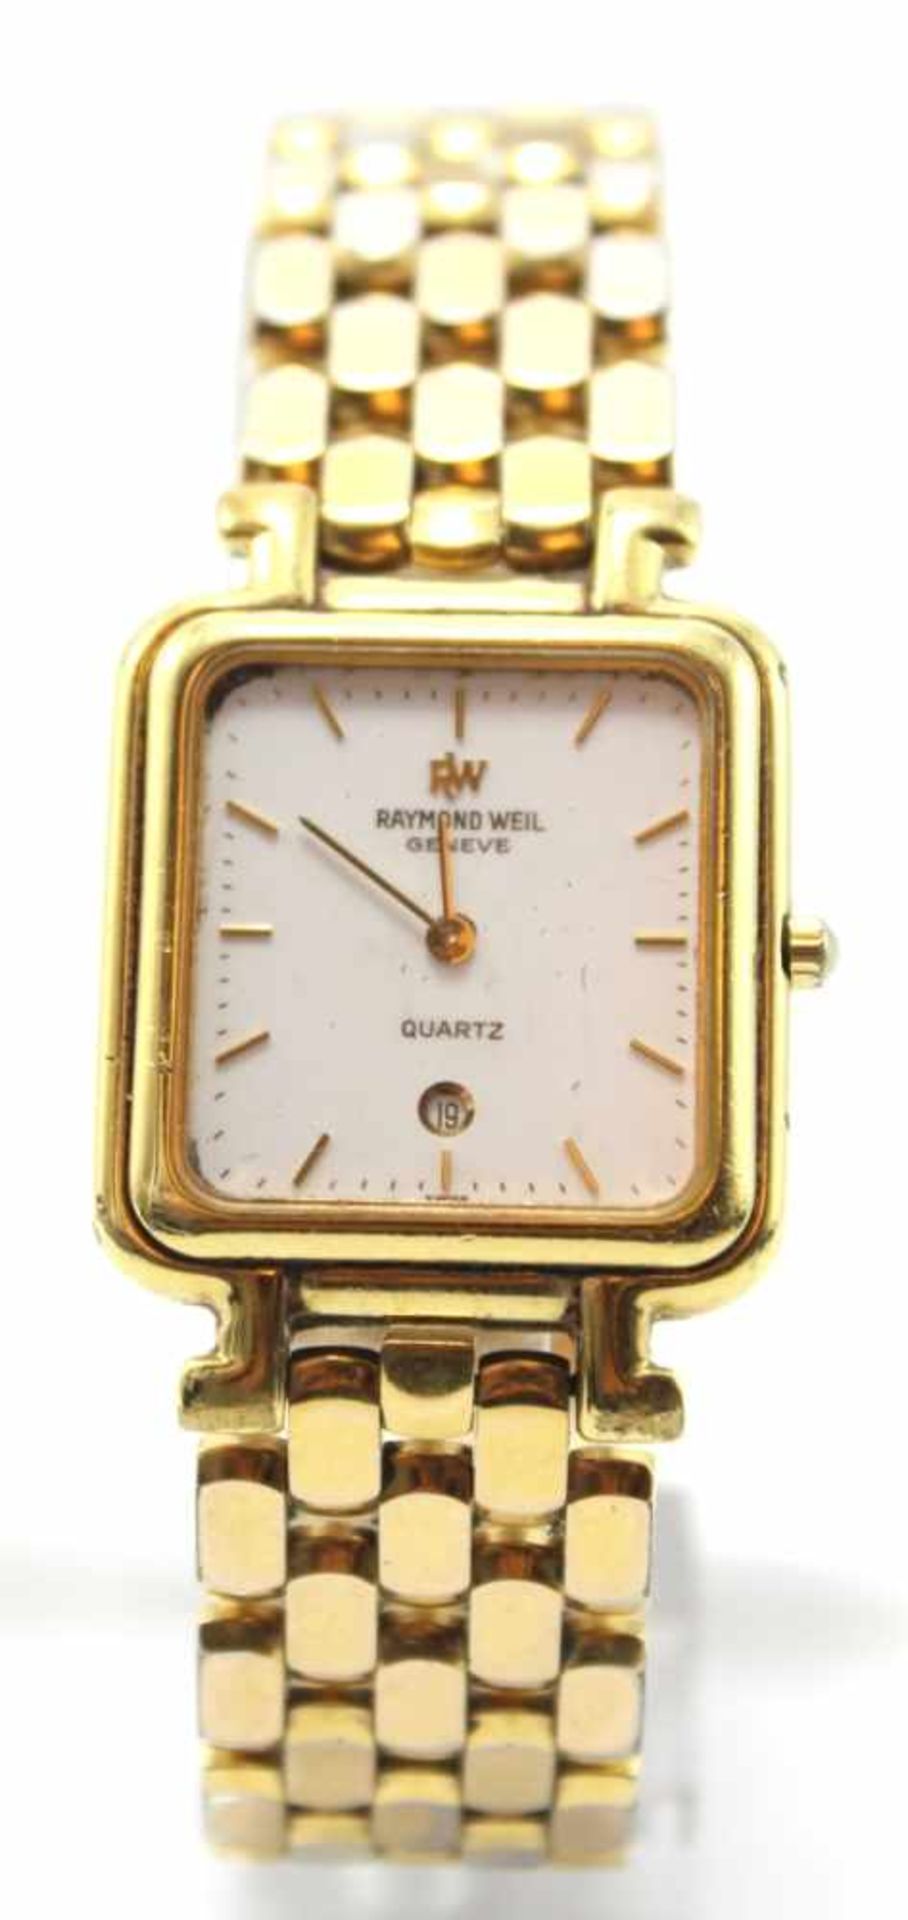 Armbanduhr - Marke Raymond Weil Quarz, weißes Zifferblatt, Datumsanzeige, 18 K Gold plated,